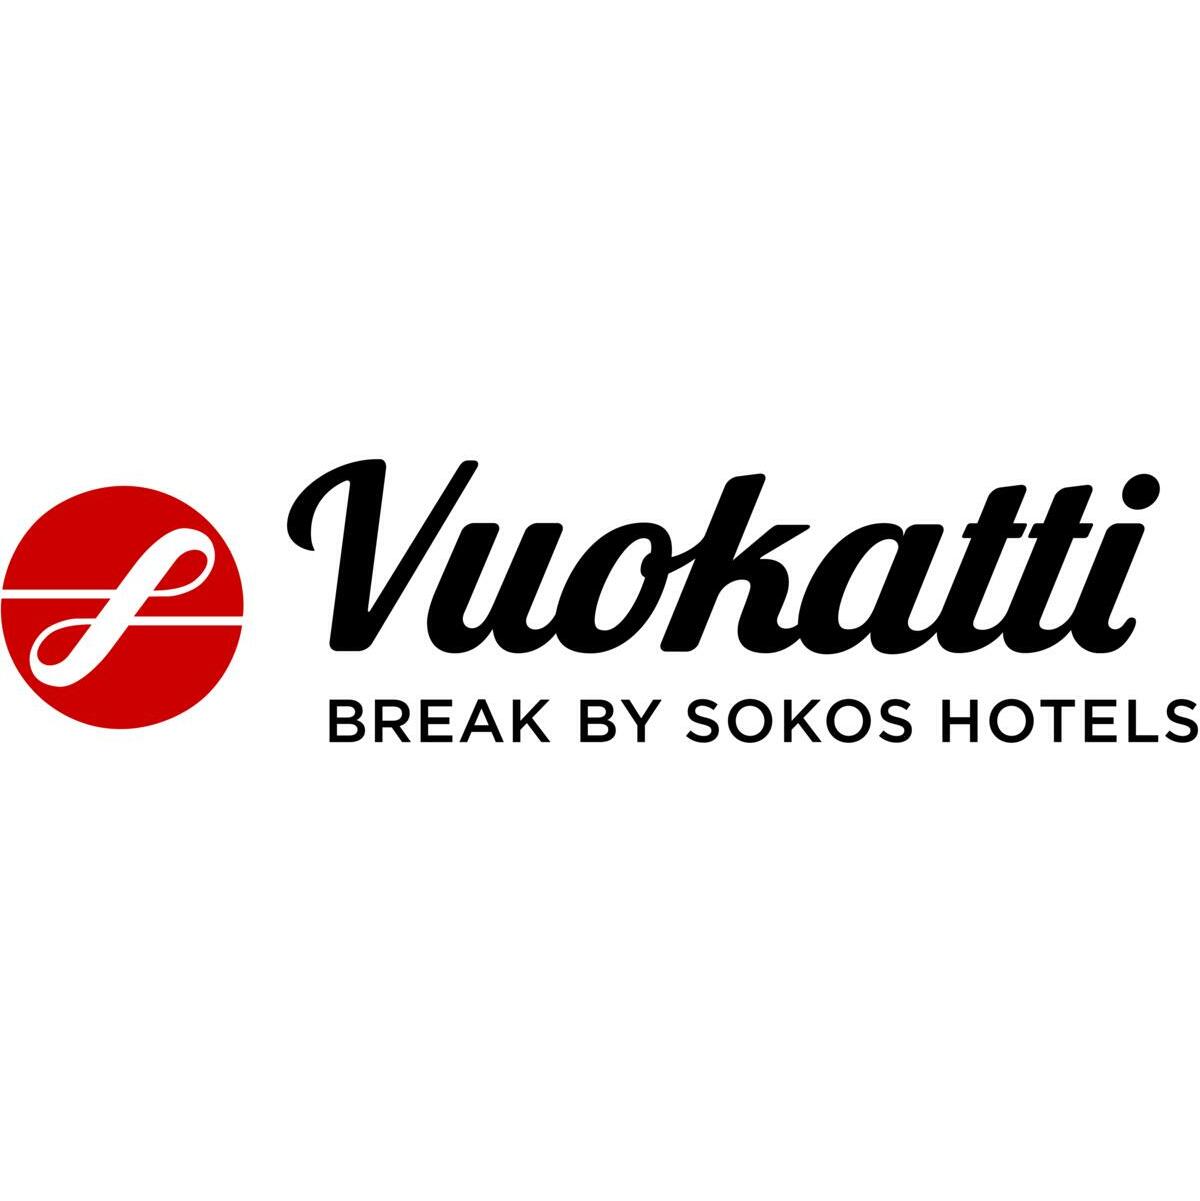 Sokos Hotels in Vuokatti and Kajaani